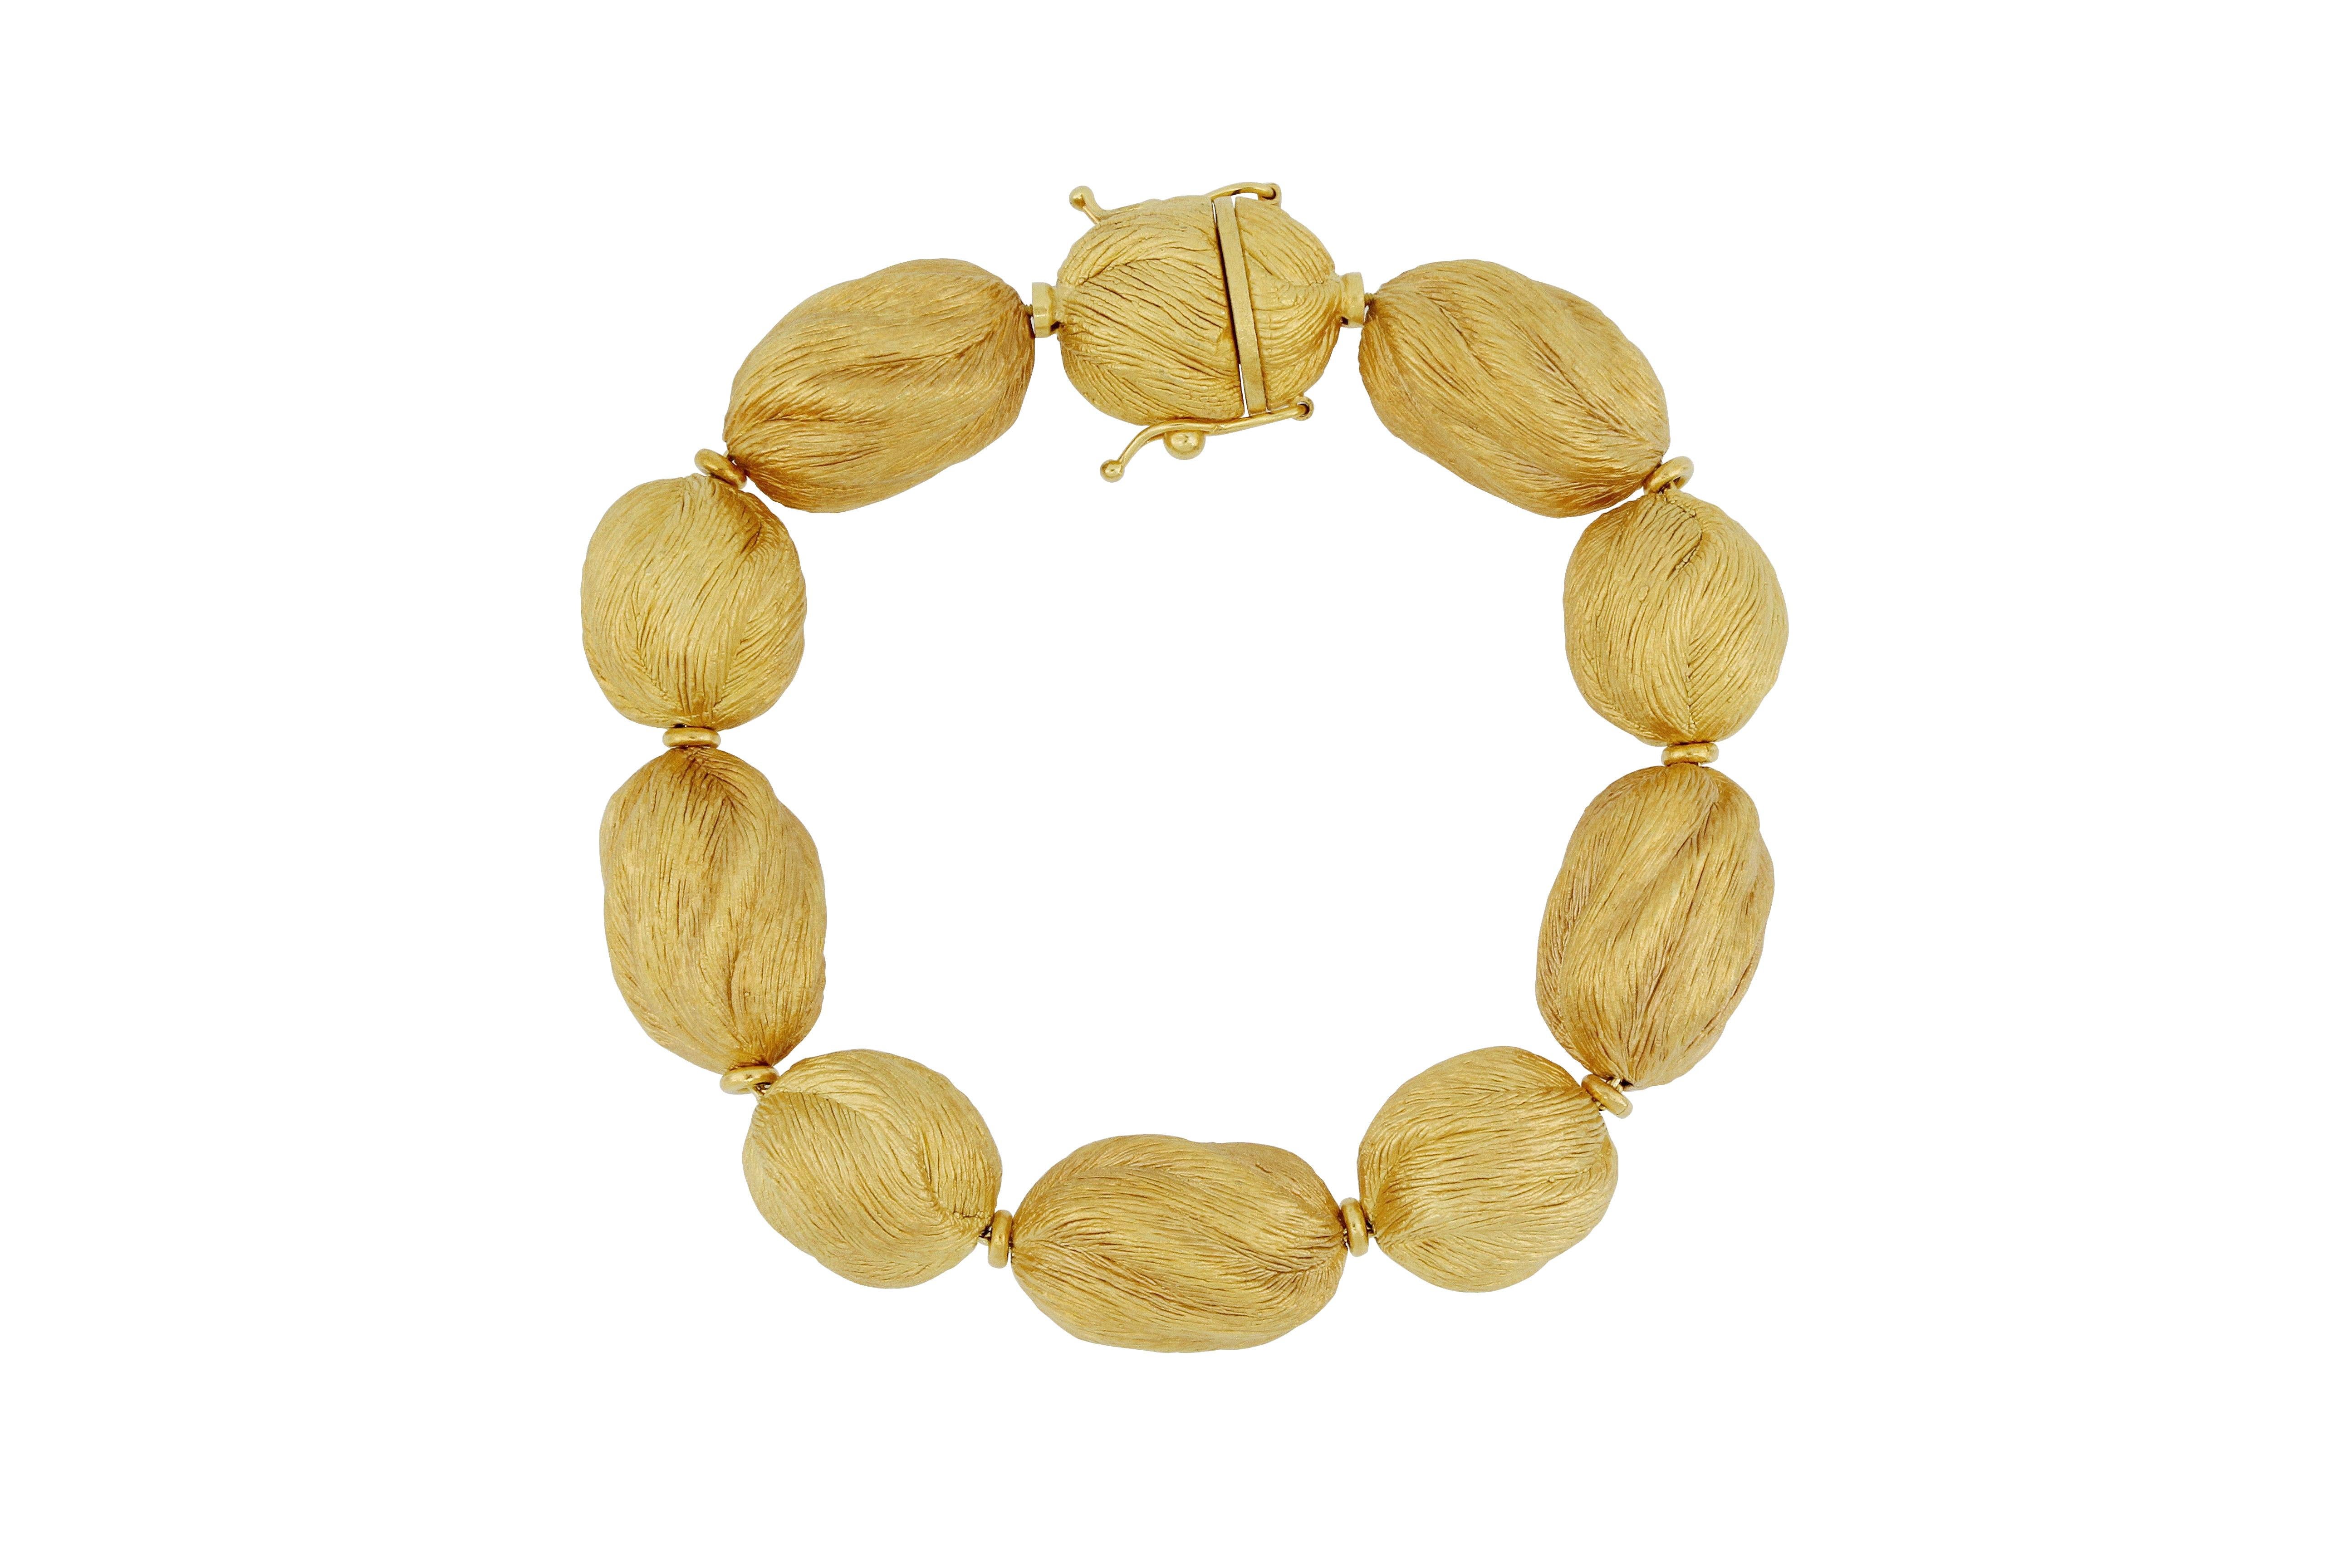 Un bracelet très spécial en or 18 carats， conçu et fabriqué en Italie. Ce bijou est composé de pièces en or jaune brossé de forme irrégulière 